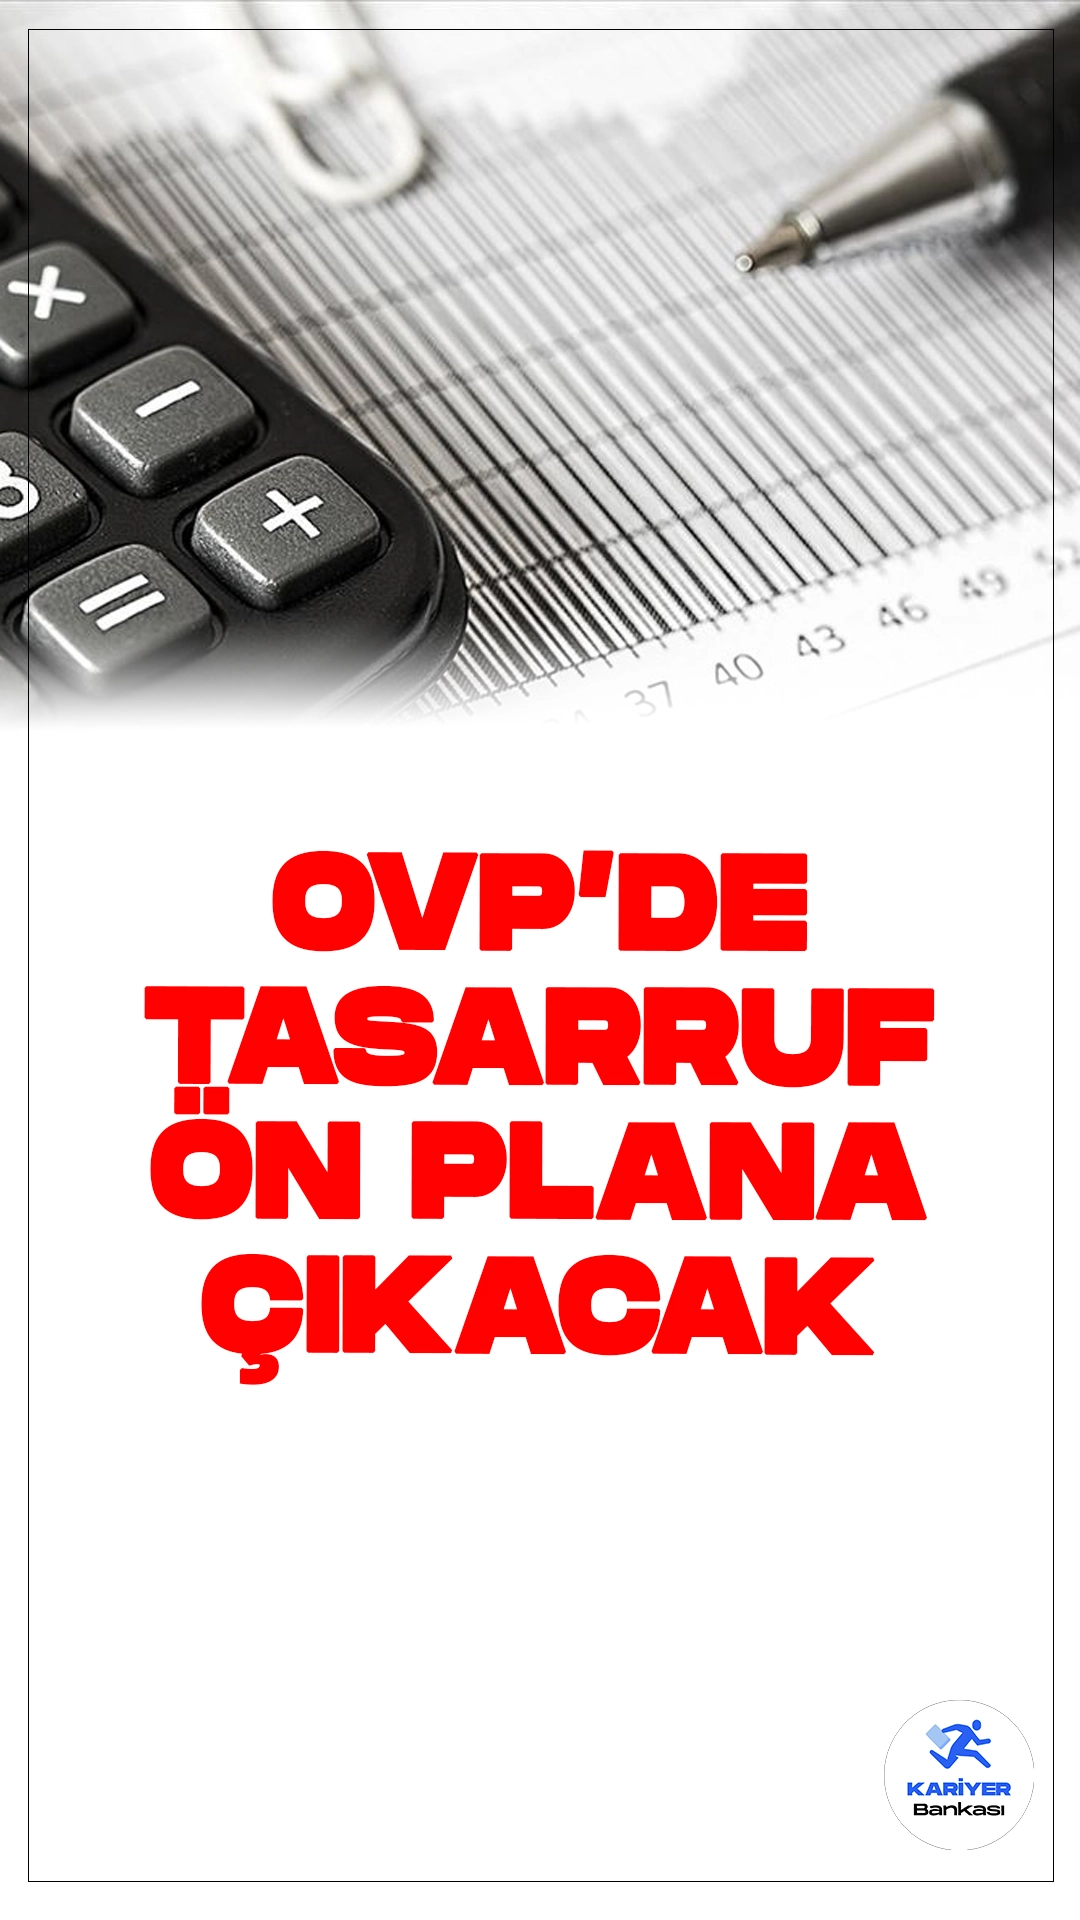 Yeni Orta Vadeli Program'da Tasarruf Ön Plana Çıkacak.Türkiye ekonomisinin önümüzdeki üç yıllık hedef ve politikalarını içerecek olan Orta Vadeli Program (OVP) için hazırlıklar hız kazandı. Eylül ayının ilk haftasında açıklanması beklenen OVP'de tasarruf ön planda olacak. Bu kapsamda kamu harcamaları azalacak ve kamuda verimliliği artırmak öncelikli hedef olacak.